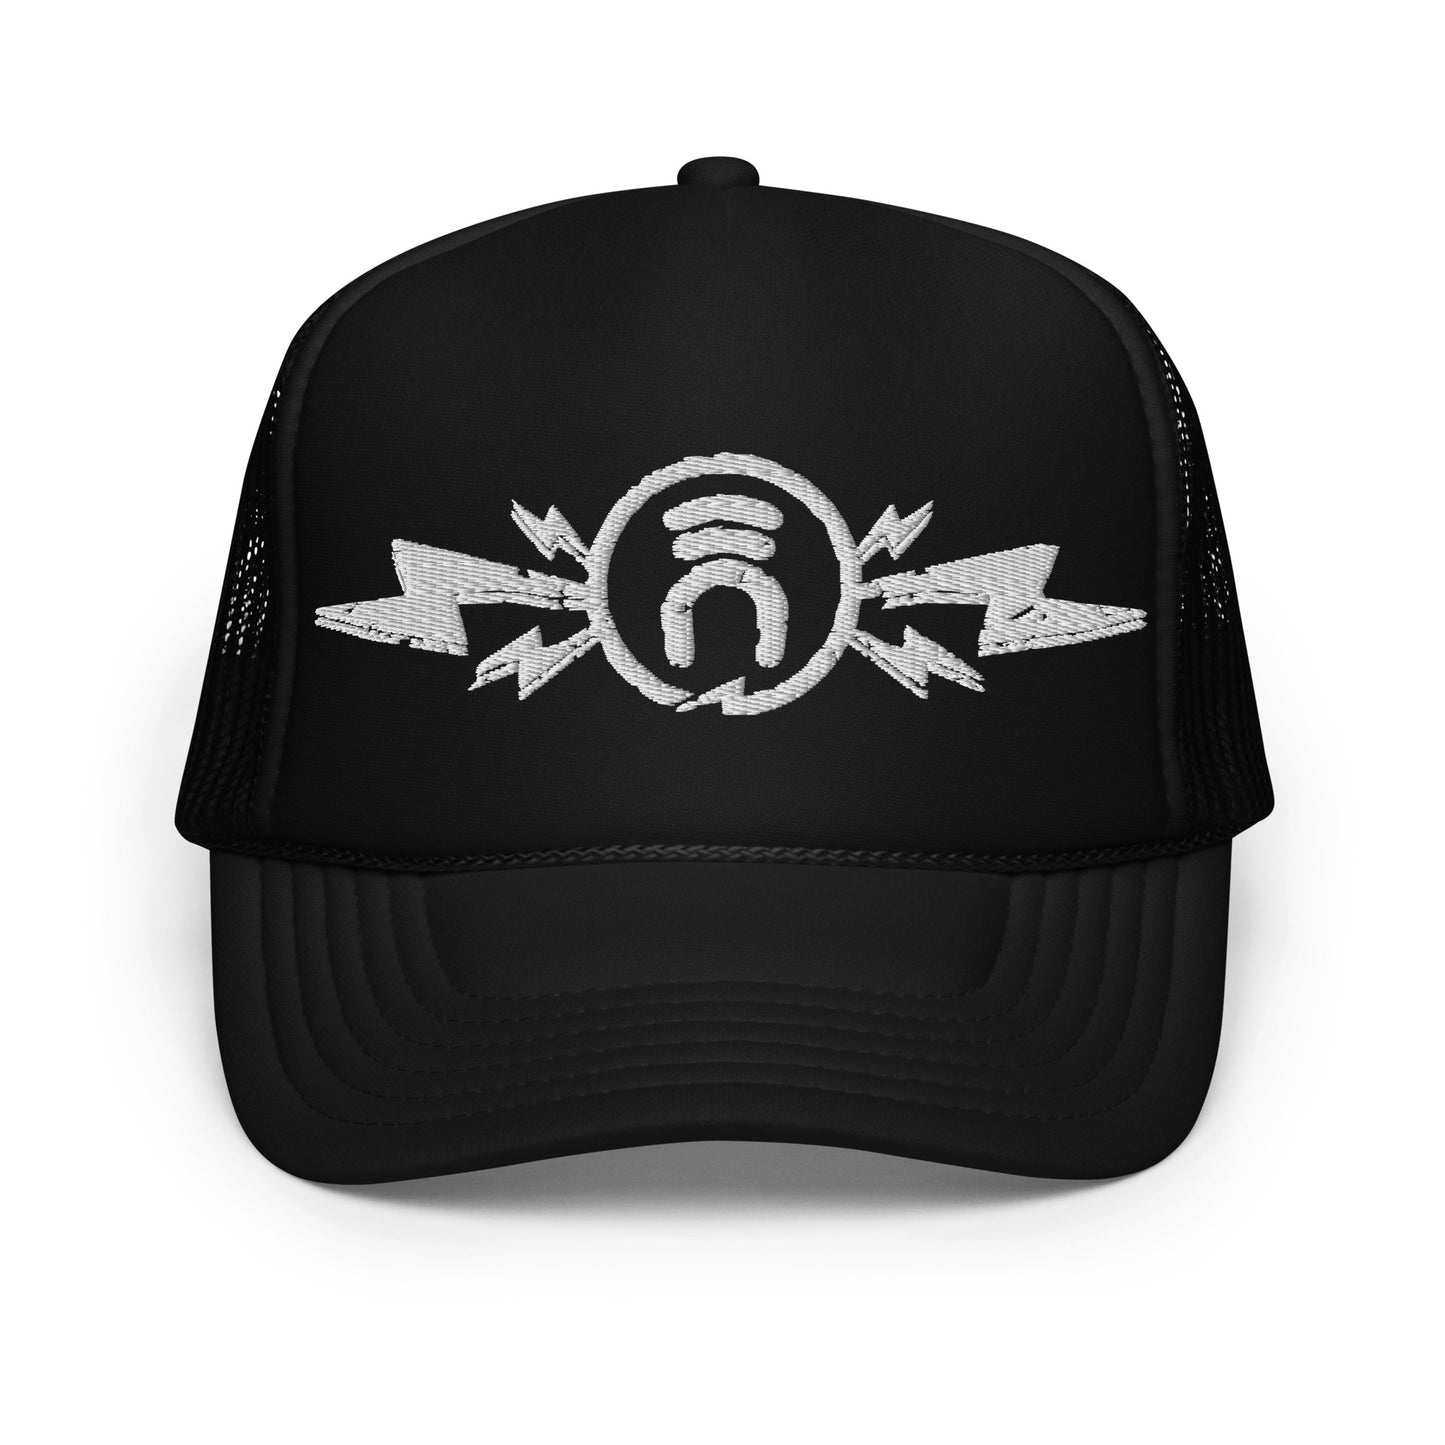 INDUKTIV lightning logo Foam trucker hat